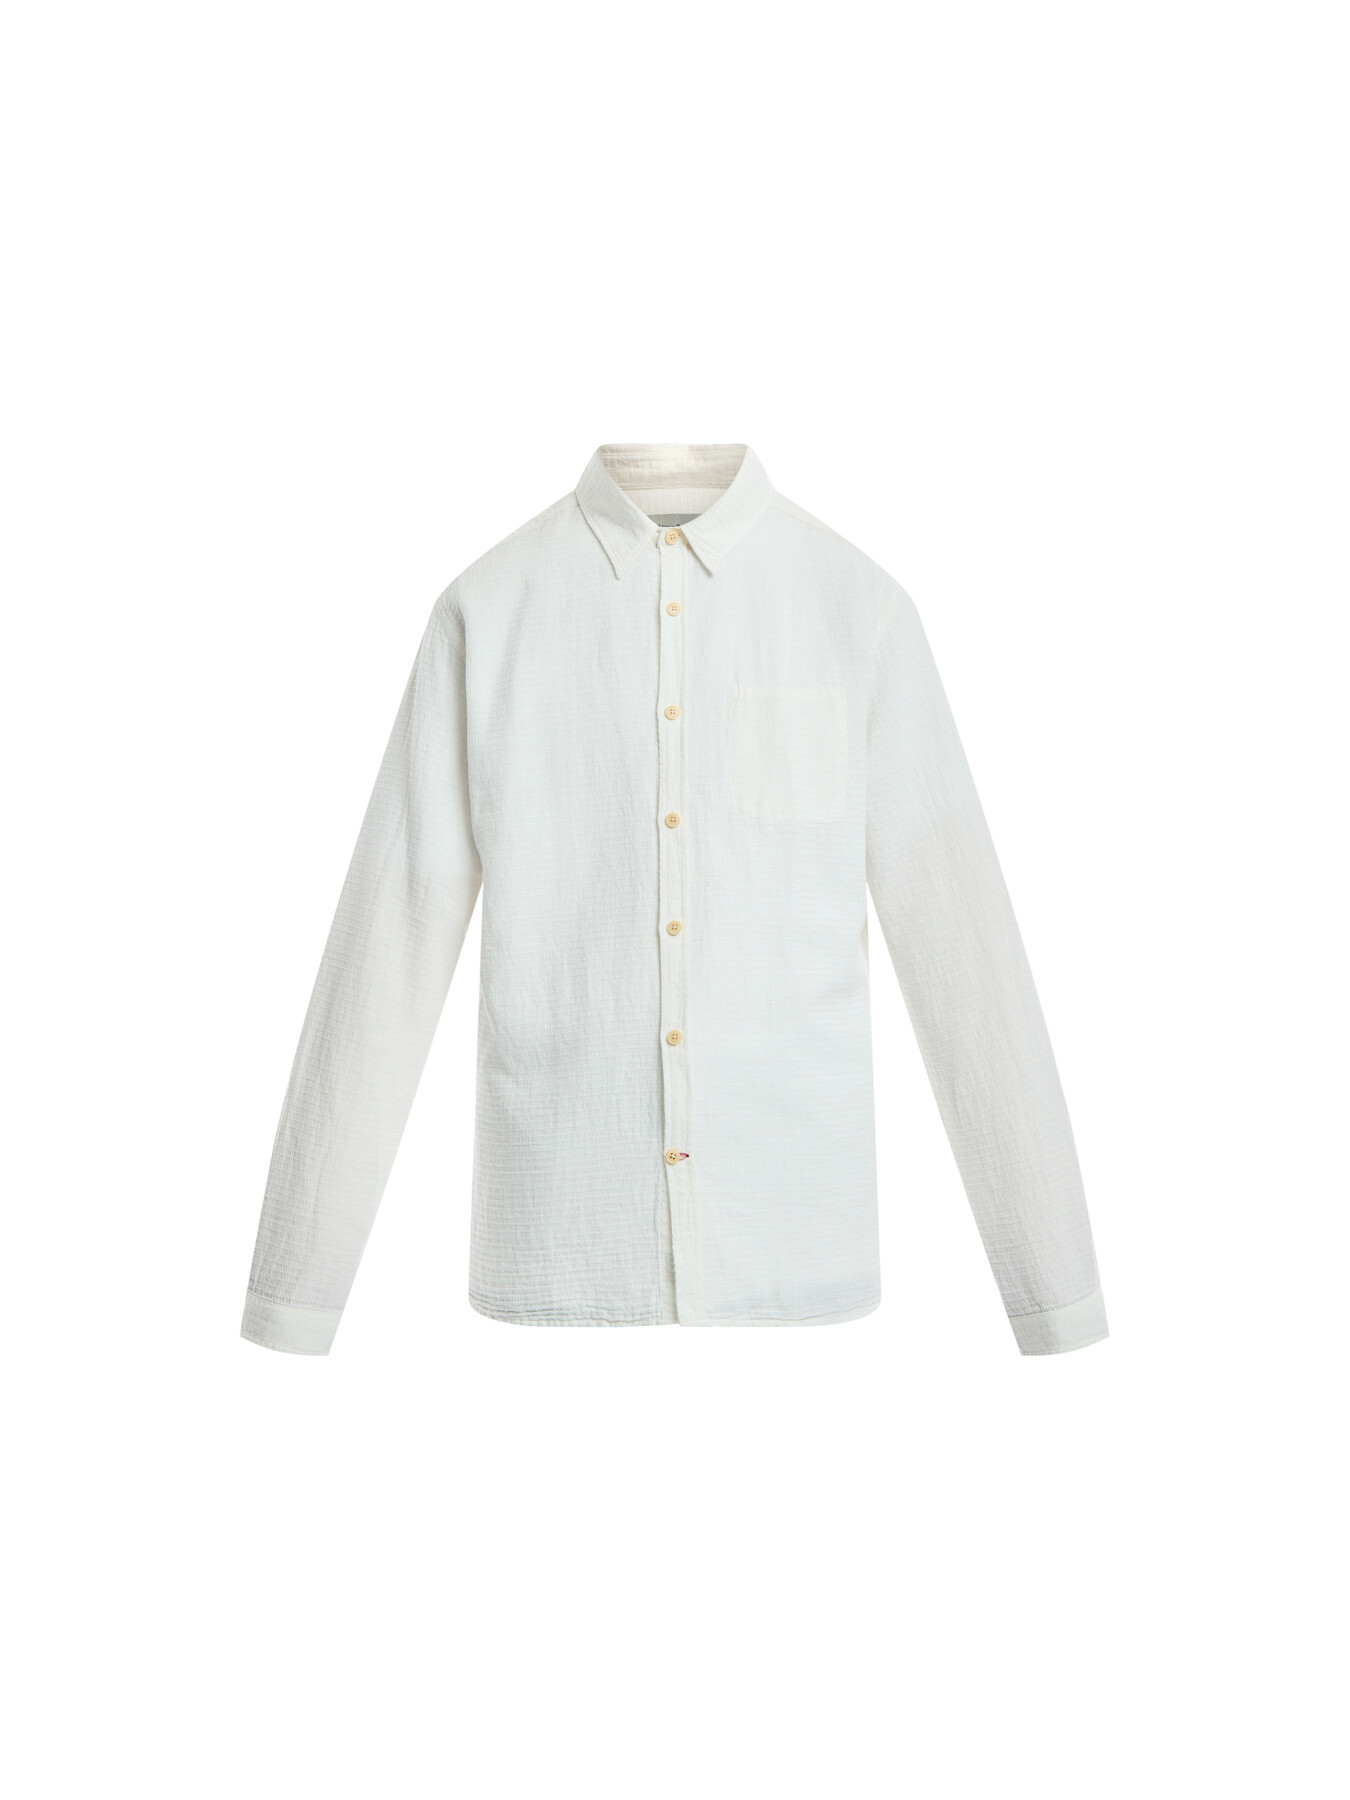 Oliver Spencer Men's New York Special Shirt In White